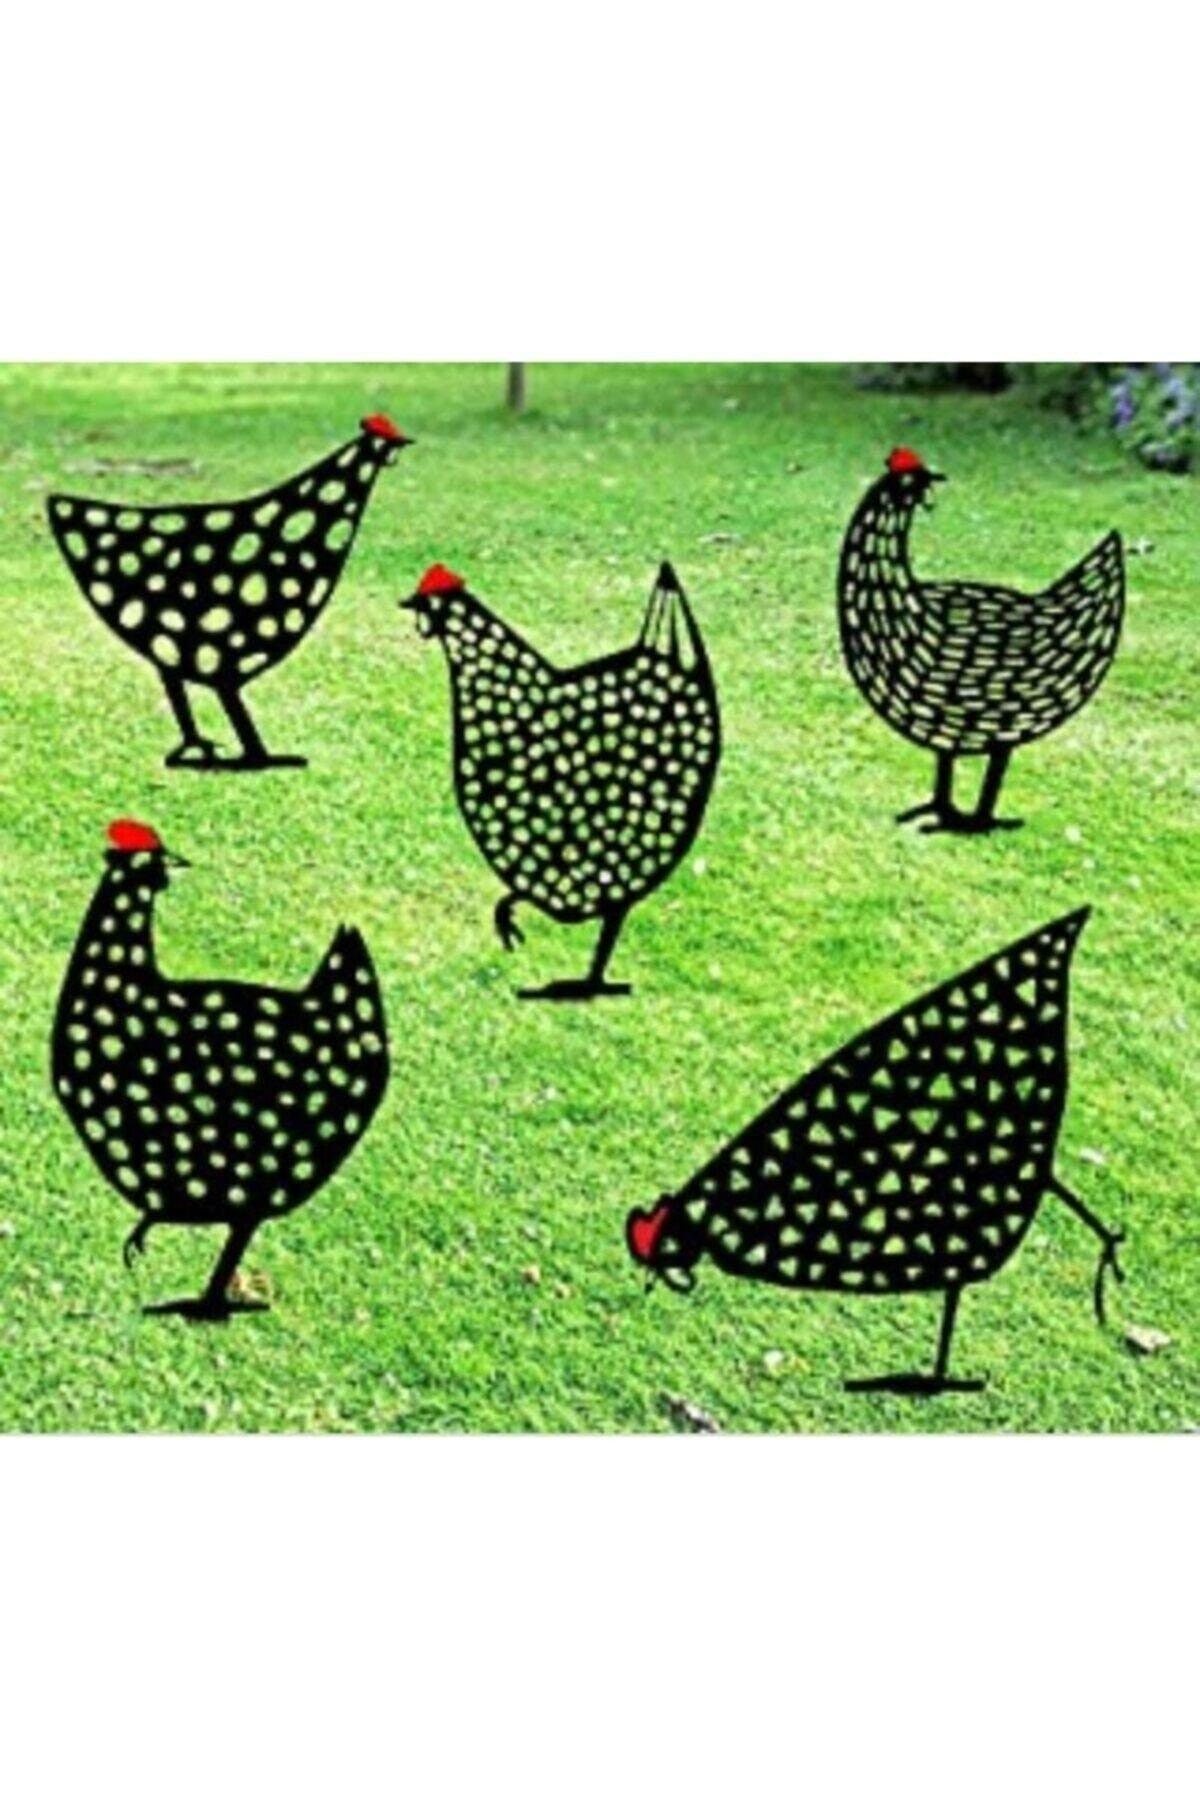 Set of 5 Metal Chickens Garden Ornament, Garden Decor - Swordslife